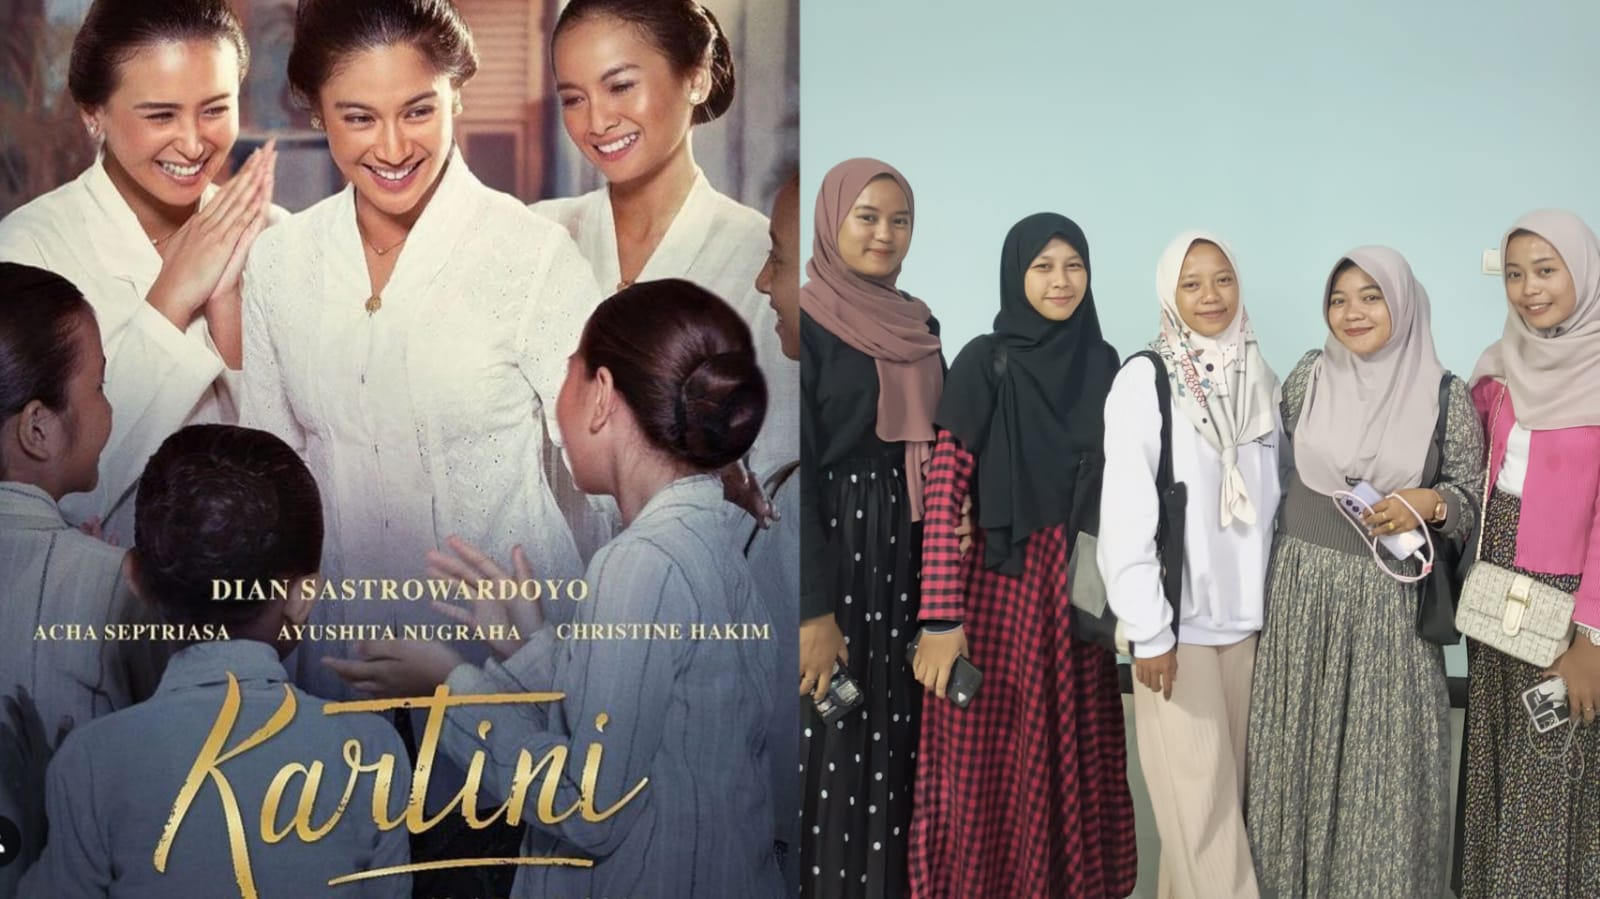 Belajar dari Film Kartini untuk Menjadi Perempuan yang Berintegritas dan Berkualitas